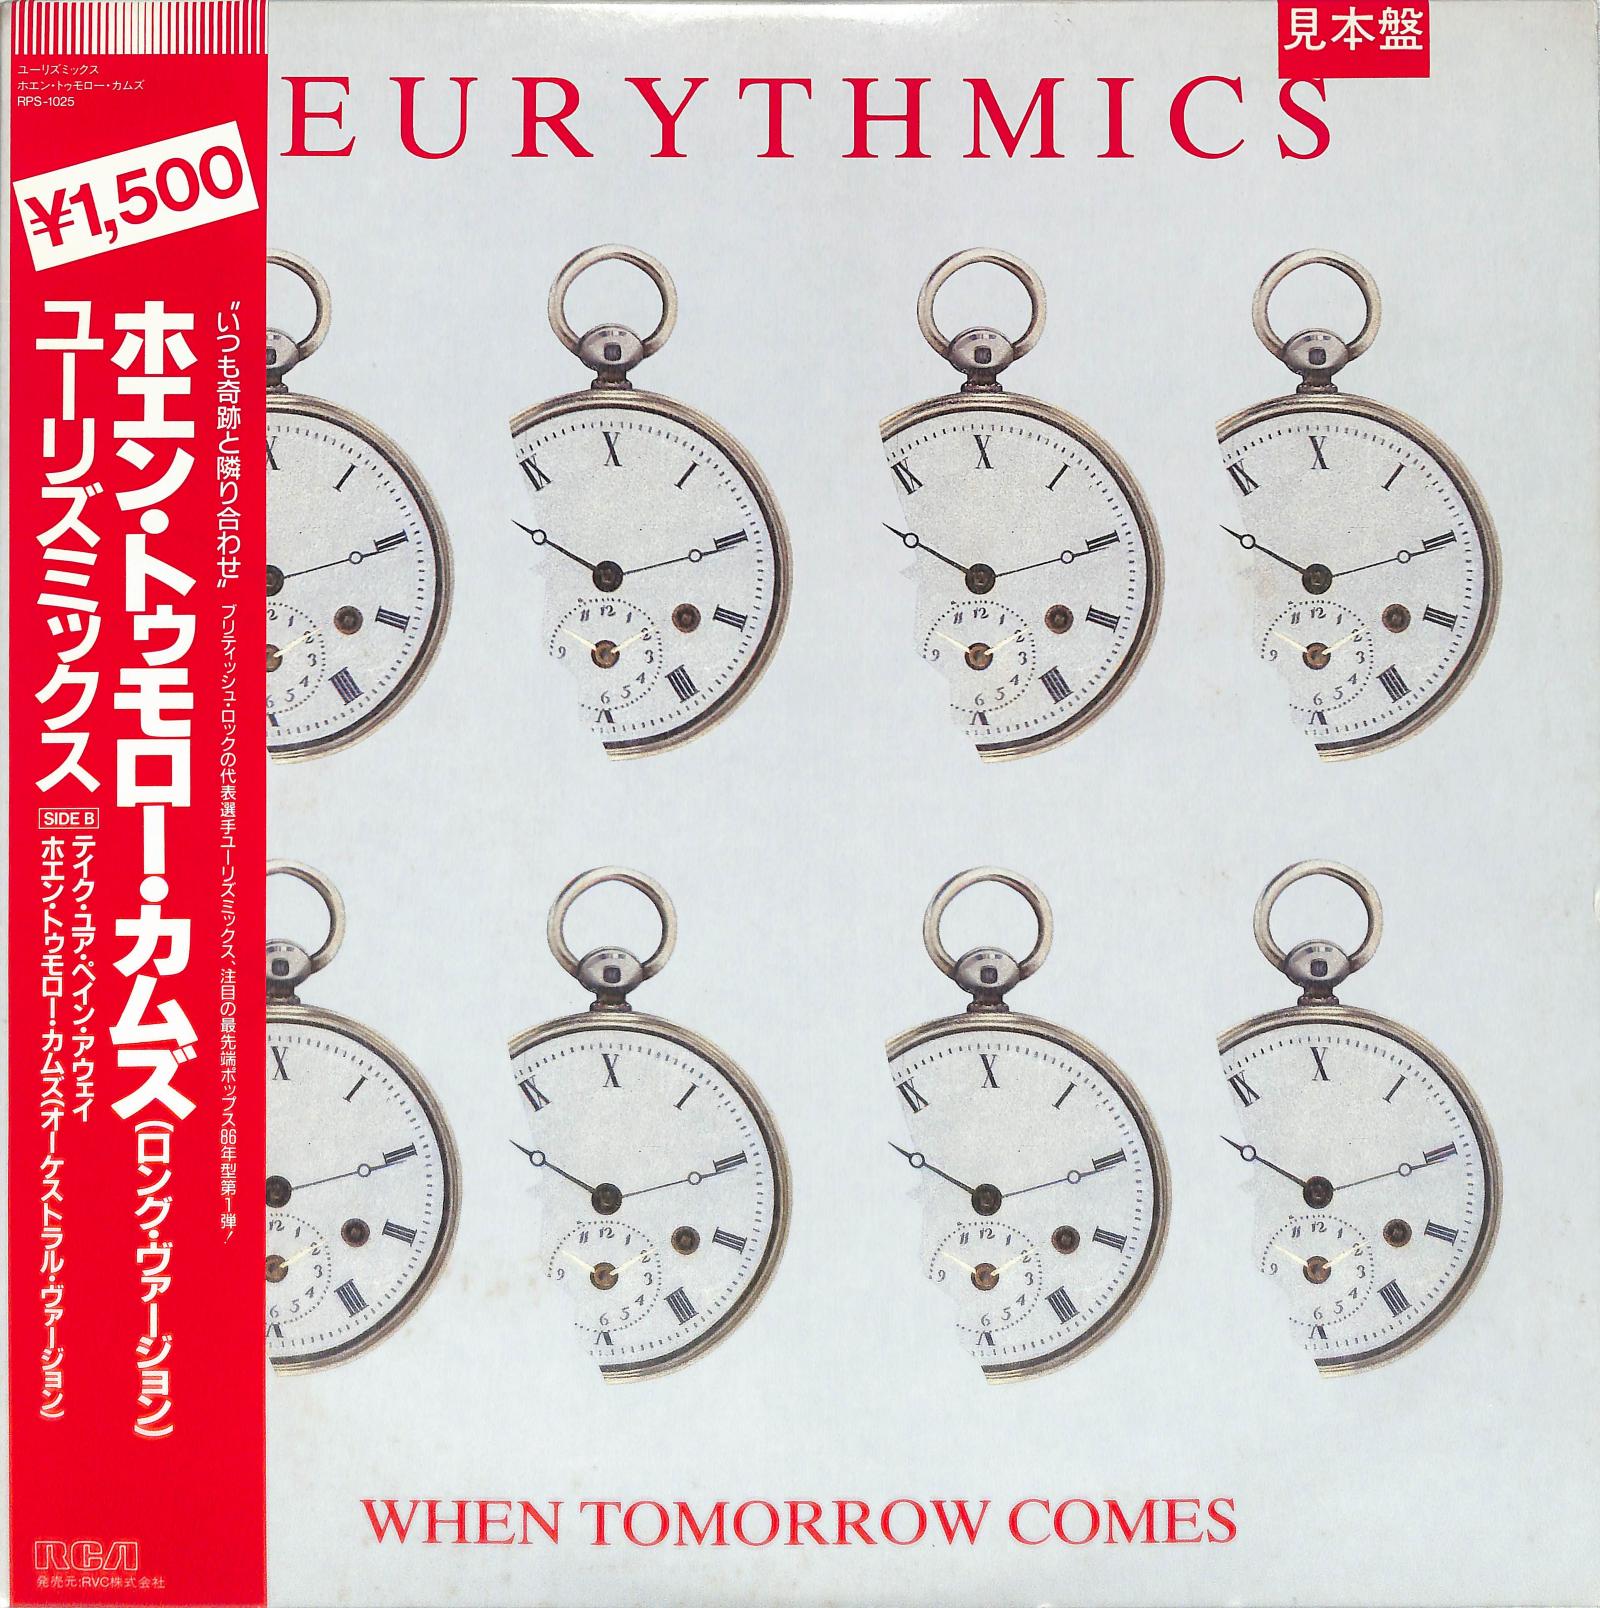 EURYTHMICS - When Tomorrow Comes